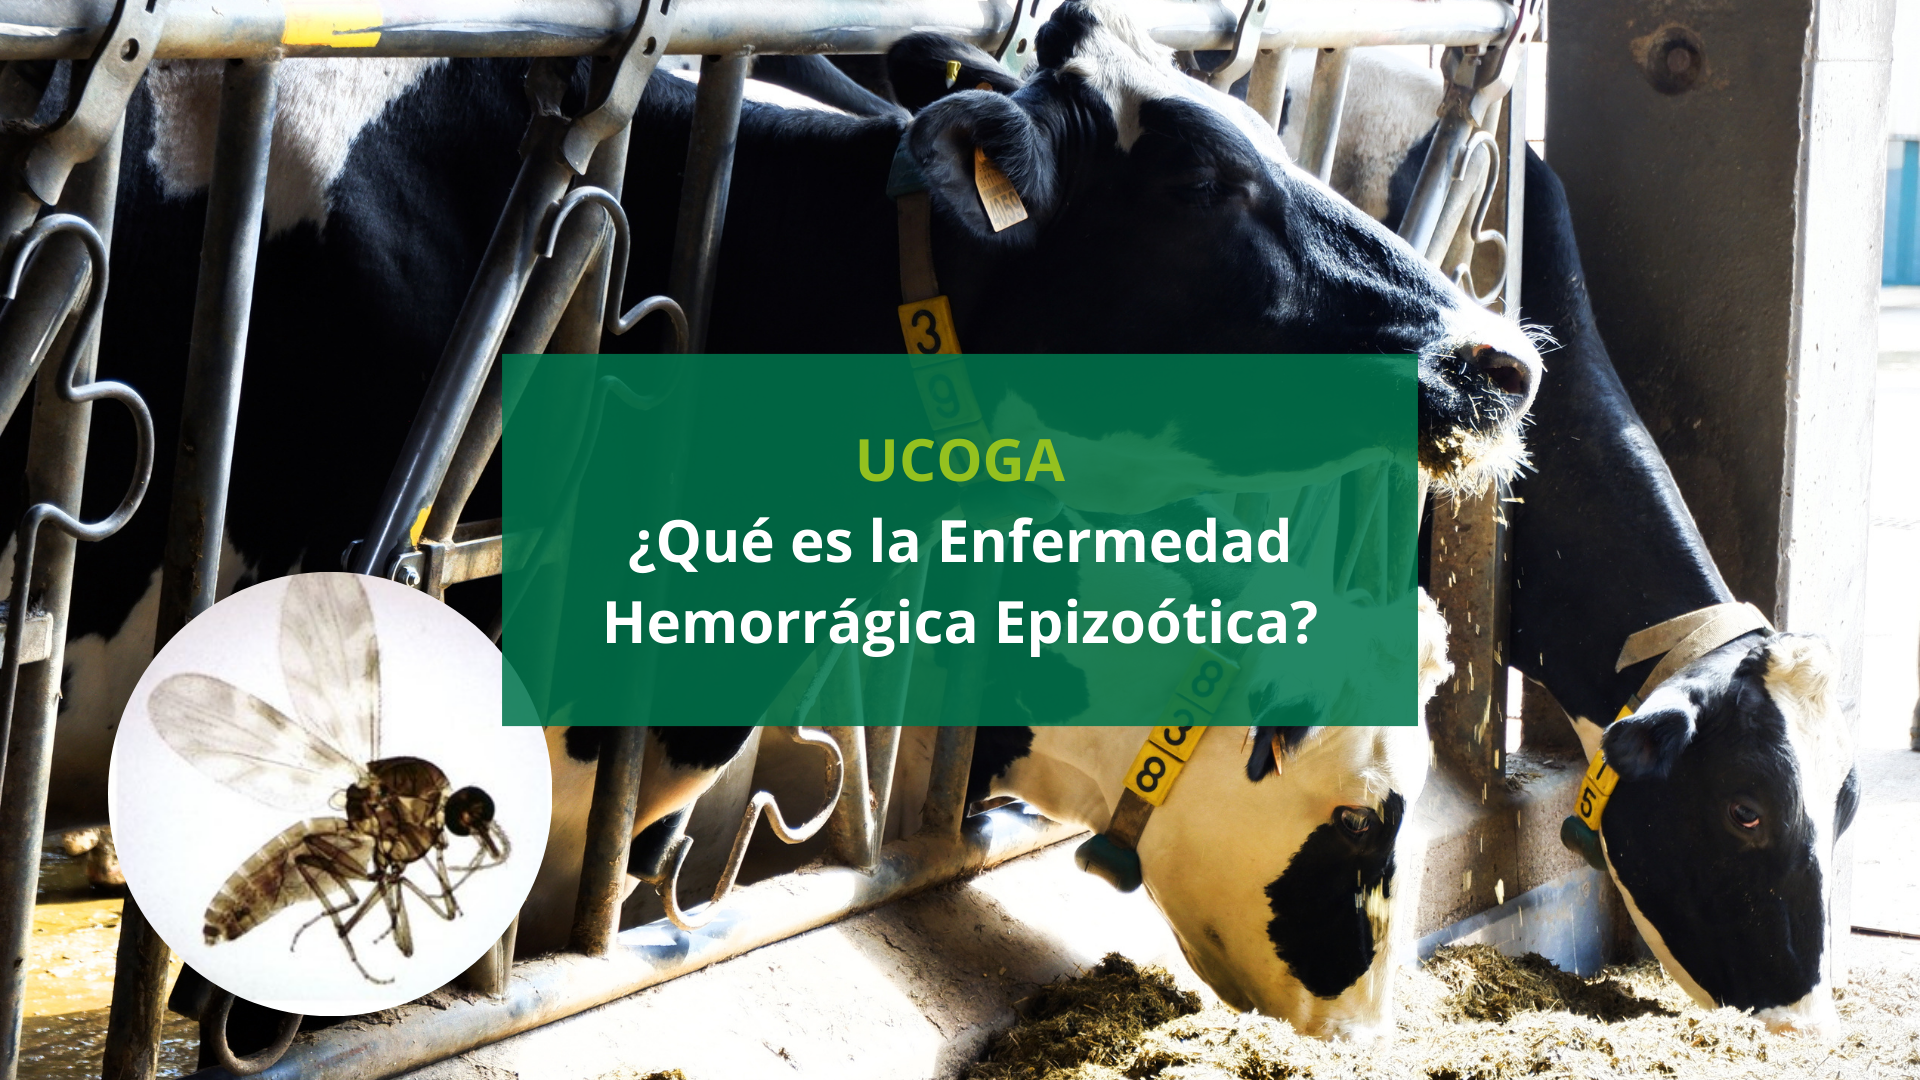 Nueva enfermedad en las vacas: La enfermedad hemorrágica epizoótica